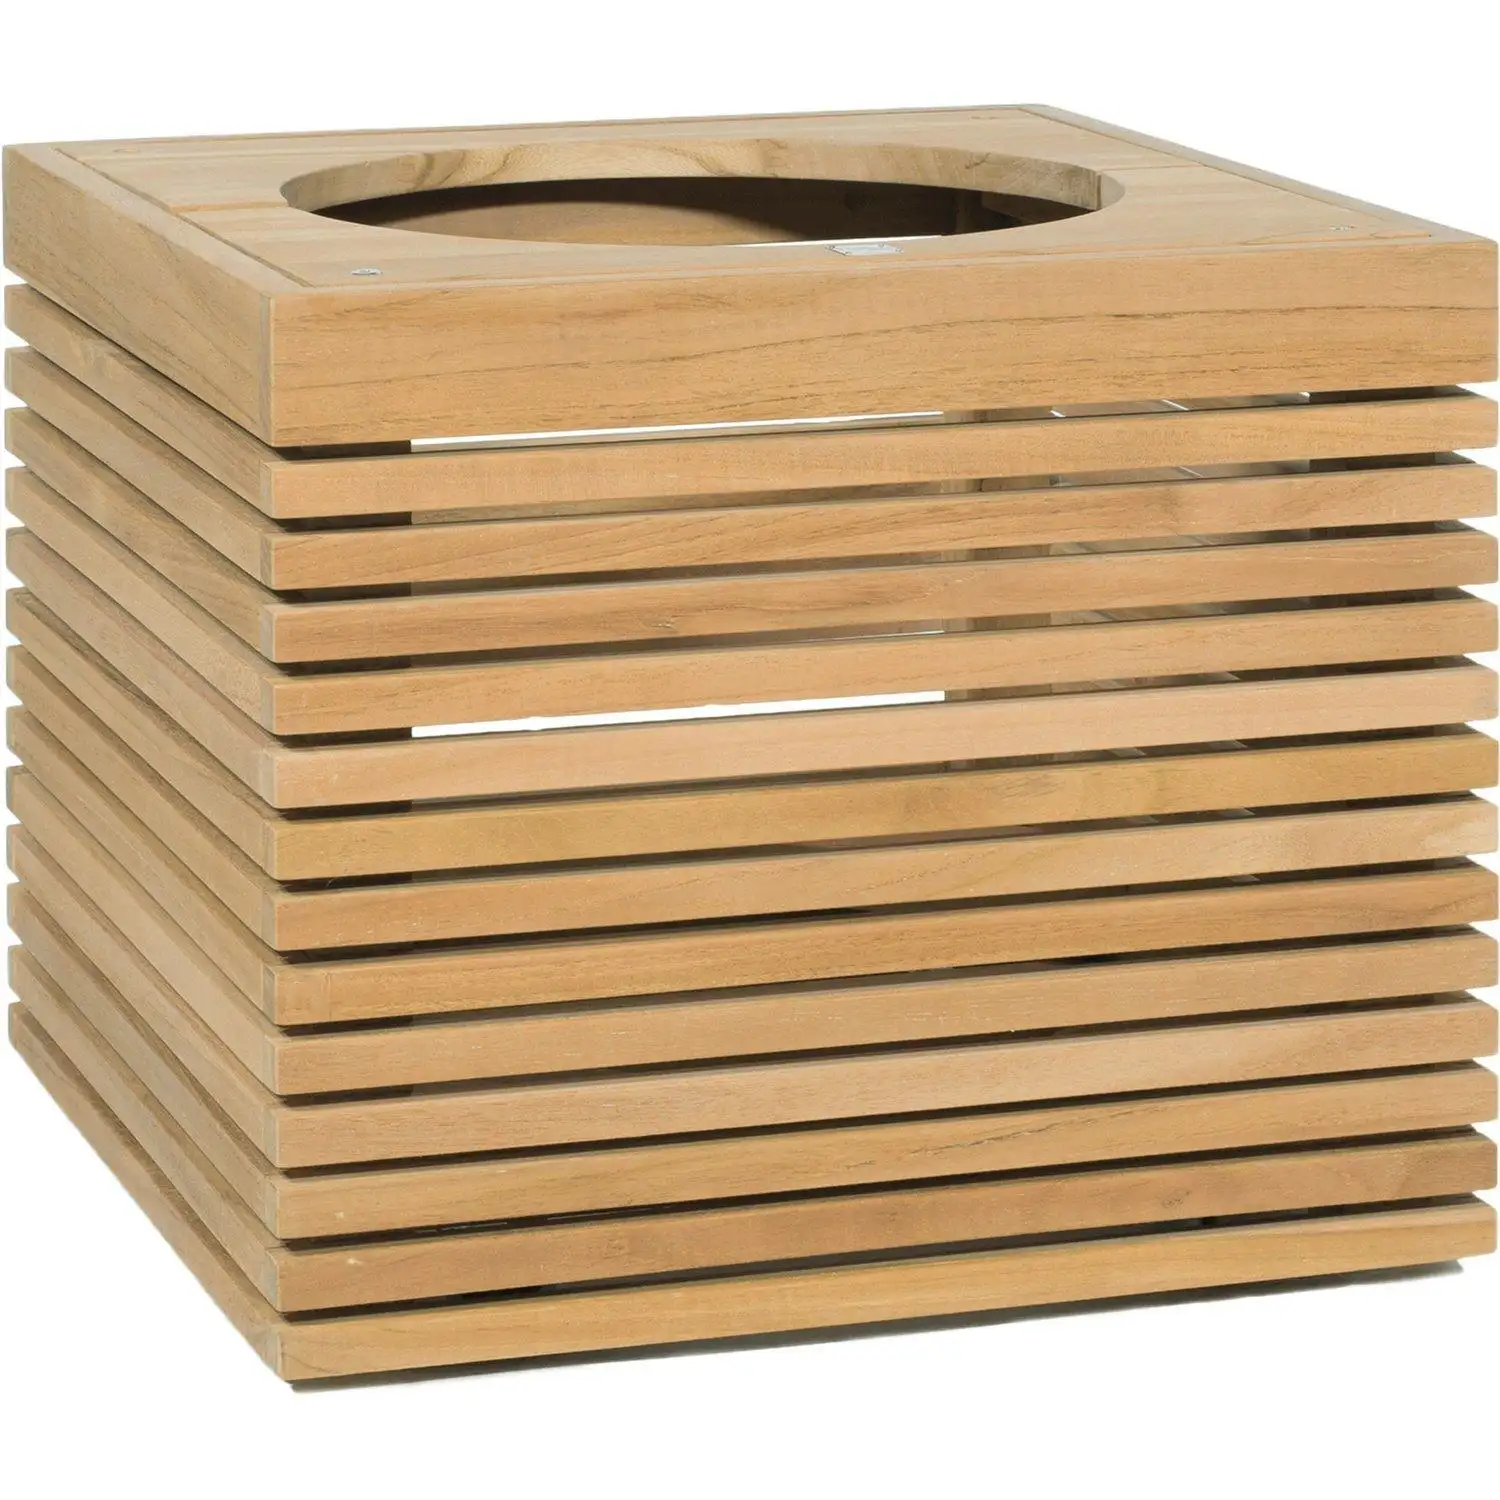 Einzigartige hand gefertigte Mango Holz Tissue Box Cover Tissue Holder Werkseitig hergestellte Serviette Aufbewahrung sbox Weniger Preis Produkt Niedriges MOQ